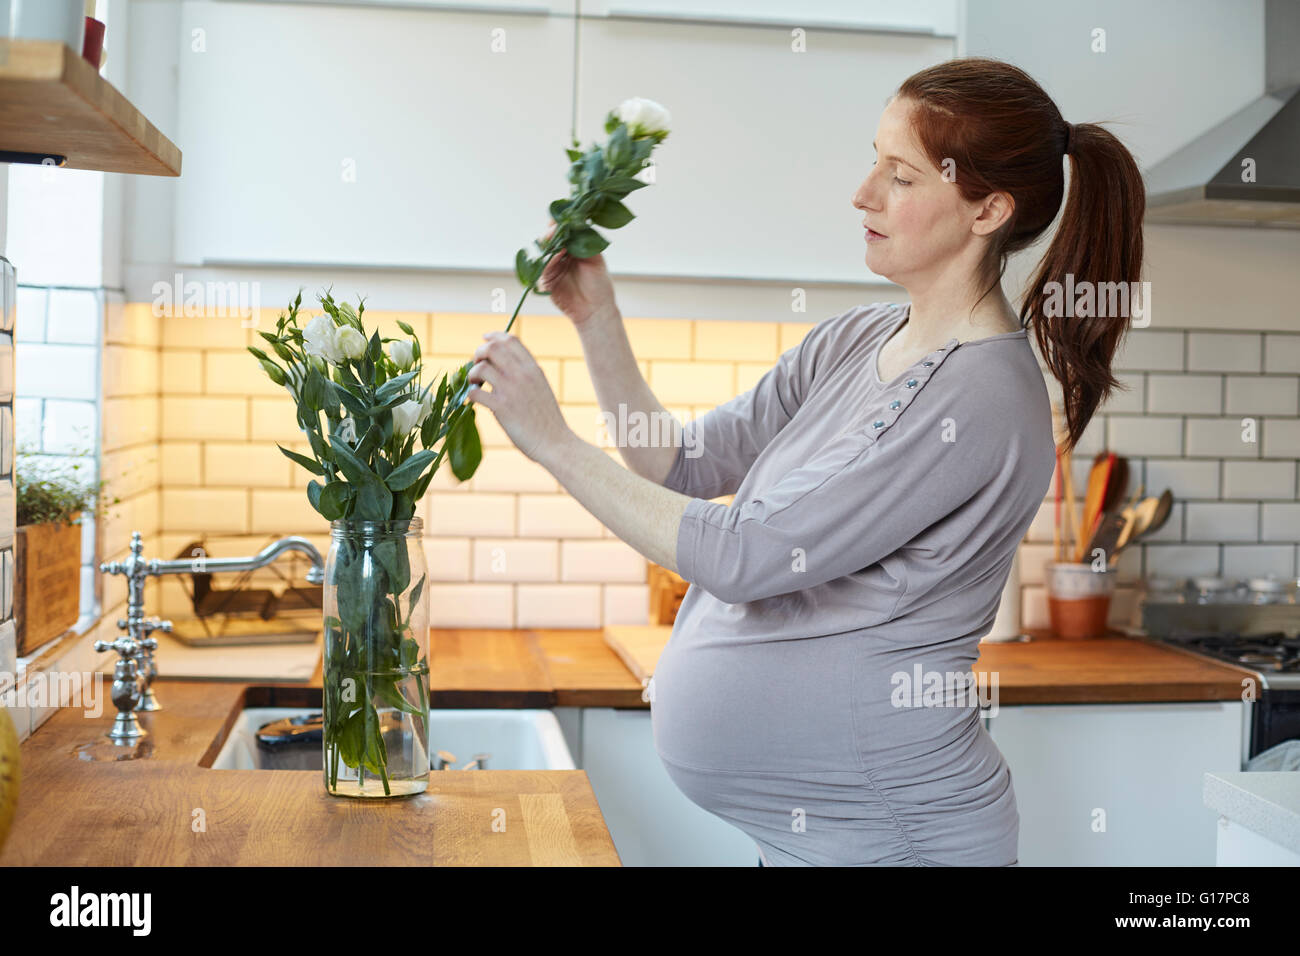 Vue de côté de femme enceinte dans la cuisine l'organisation des fleurs dans un vase Banque D'Images